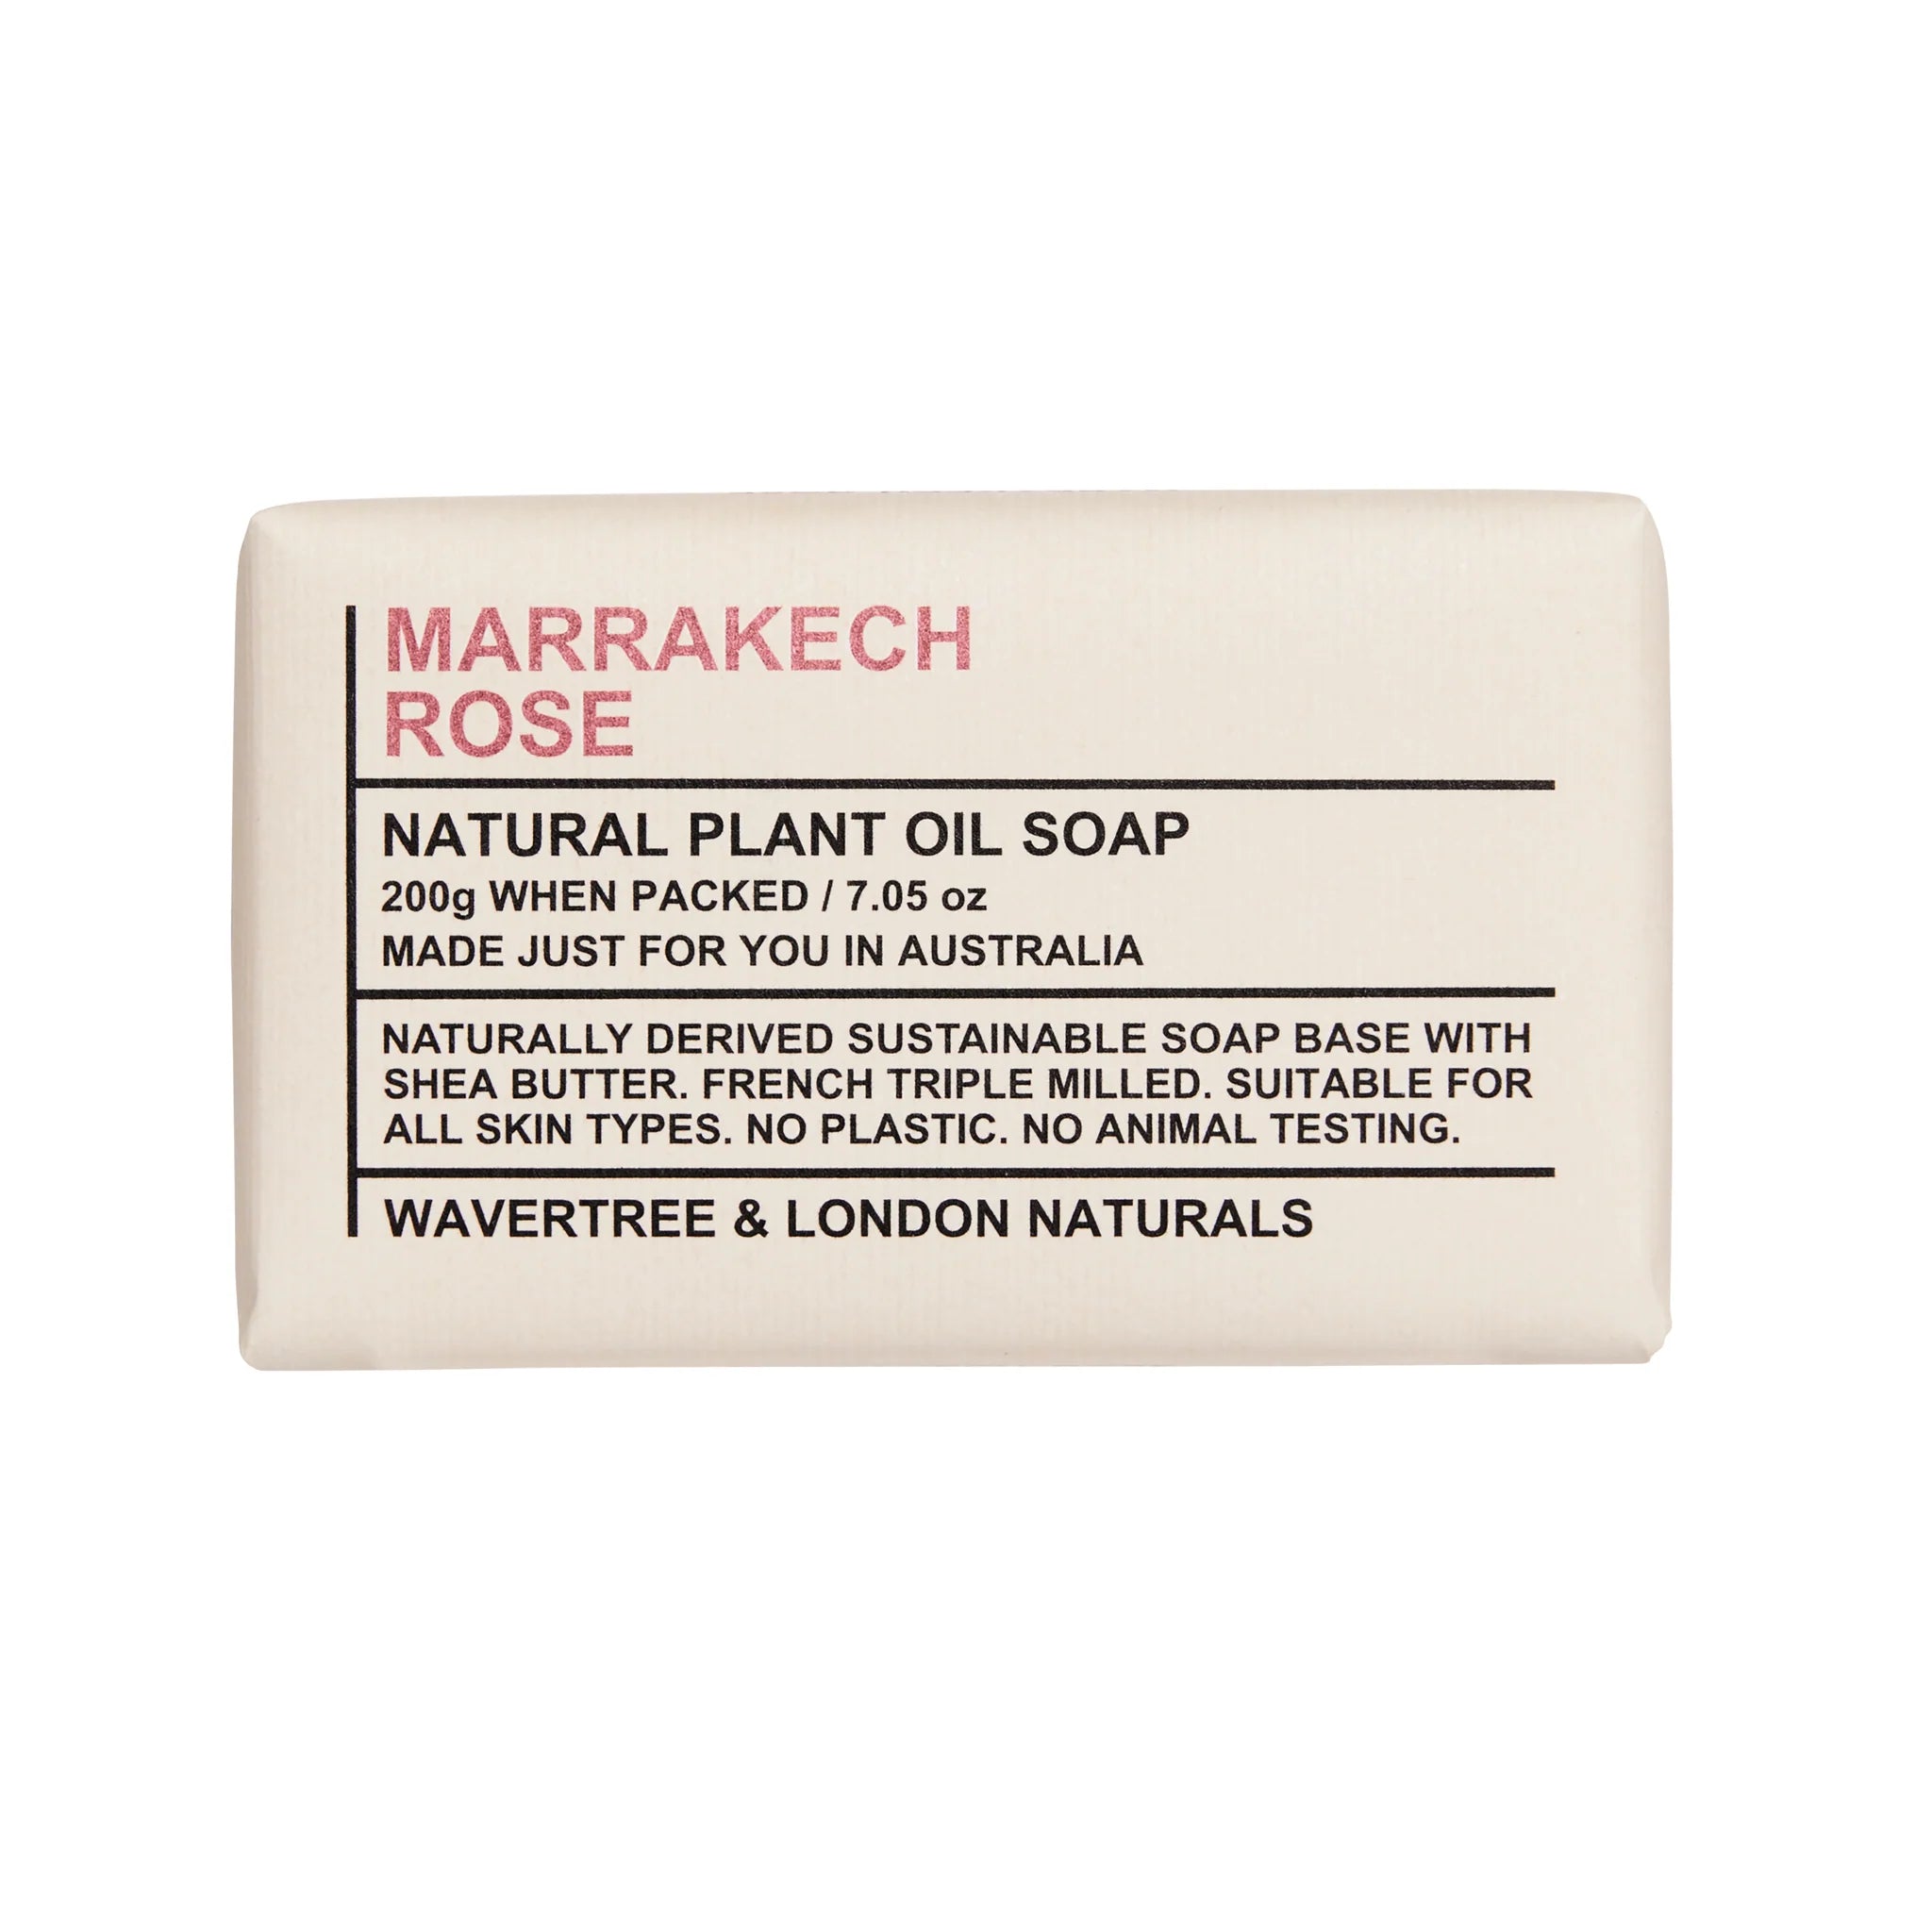 Wavertree and London Naturals - Marrakesh Rose Soap Bar 200g